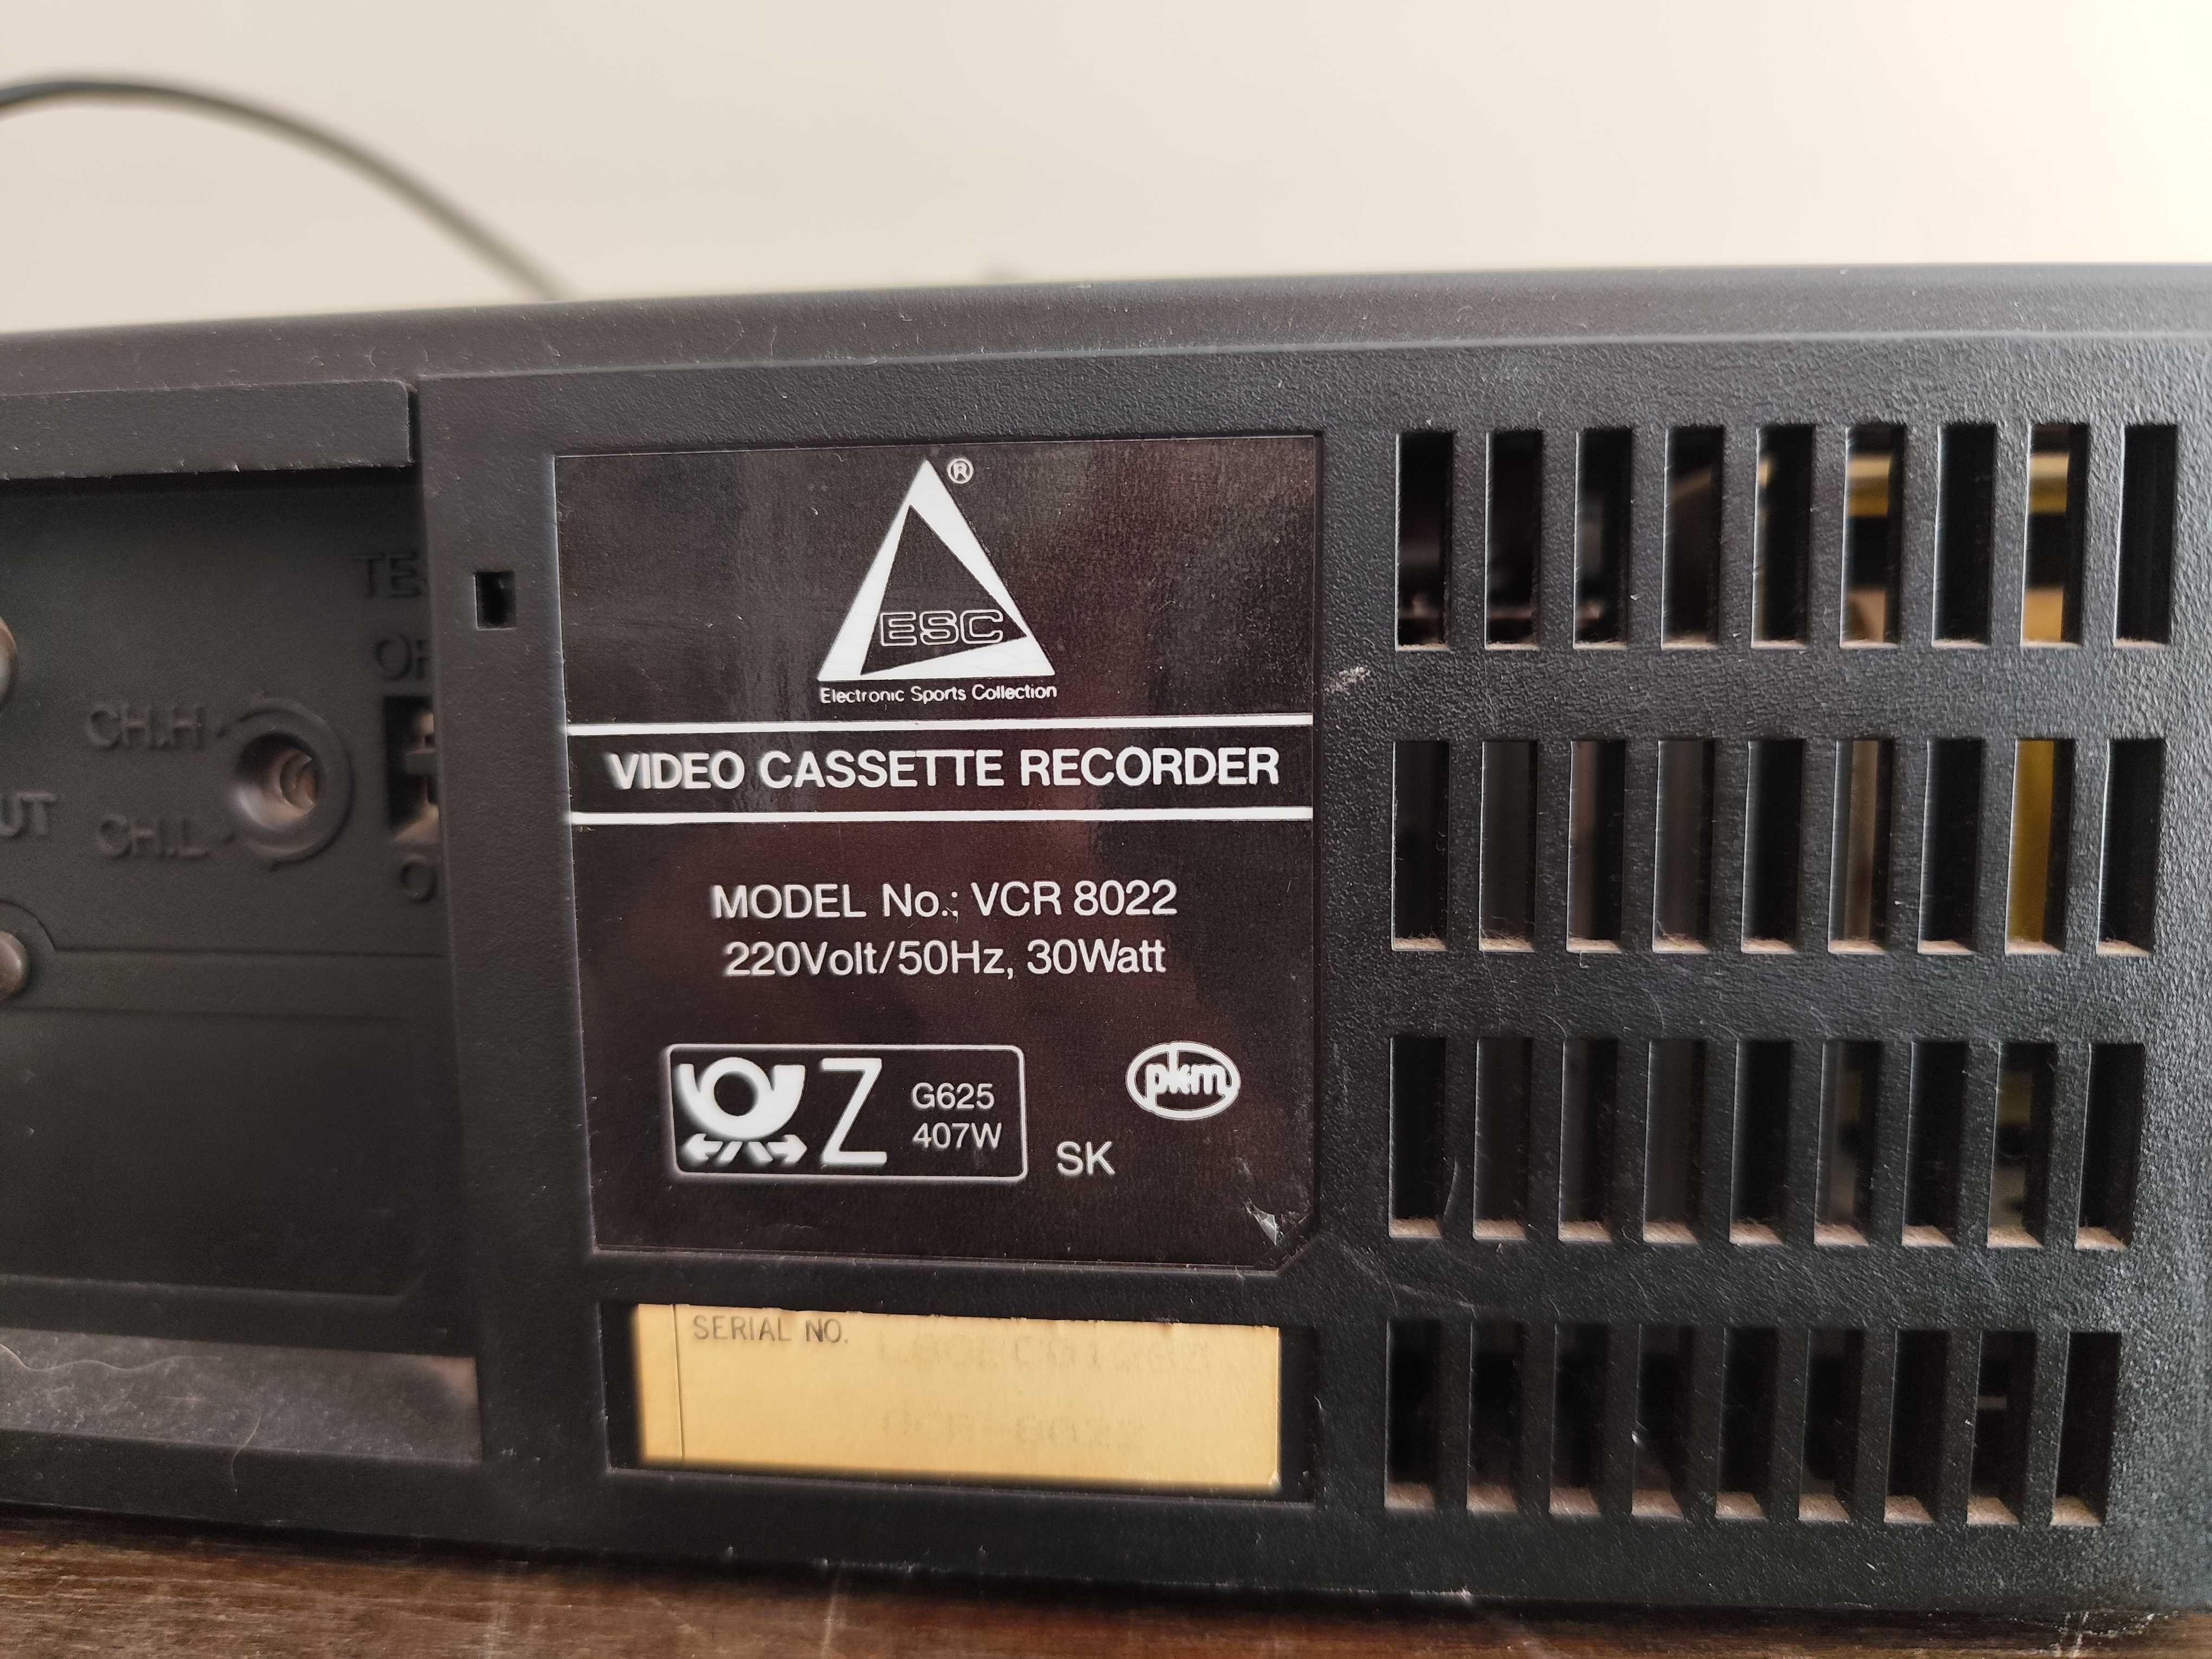 Magnetowid Video Cassette Recorder VCR-8022 ESC Condor? HVS